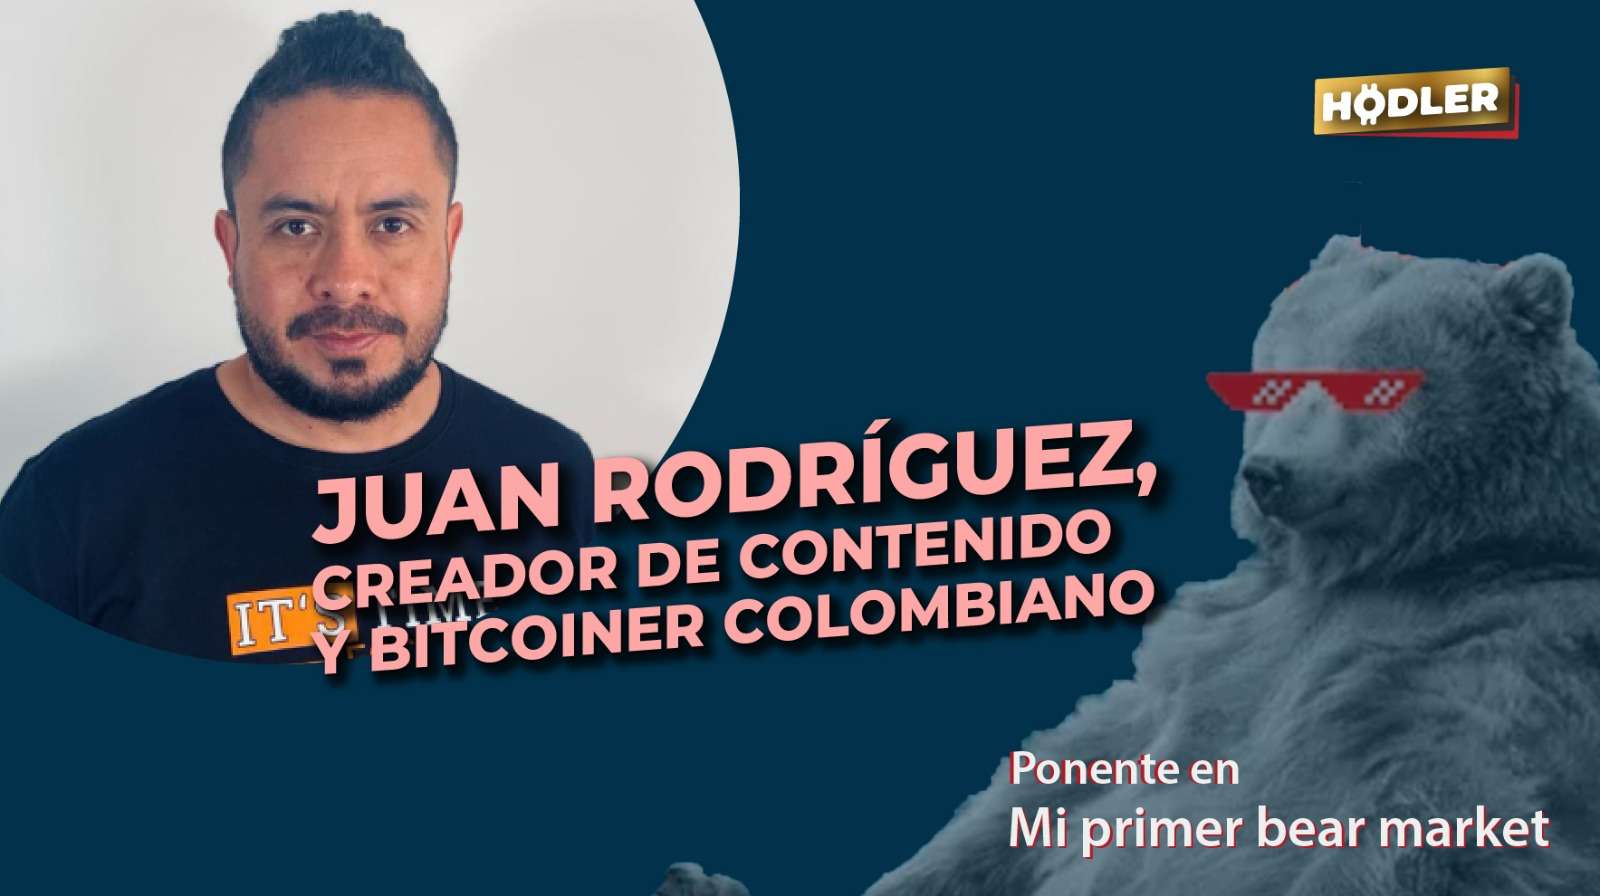 Juan_rodriguez_BTC